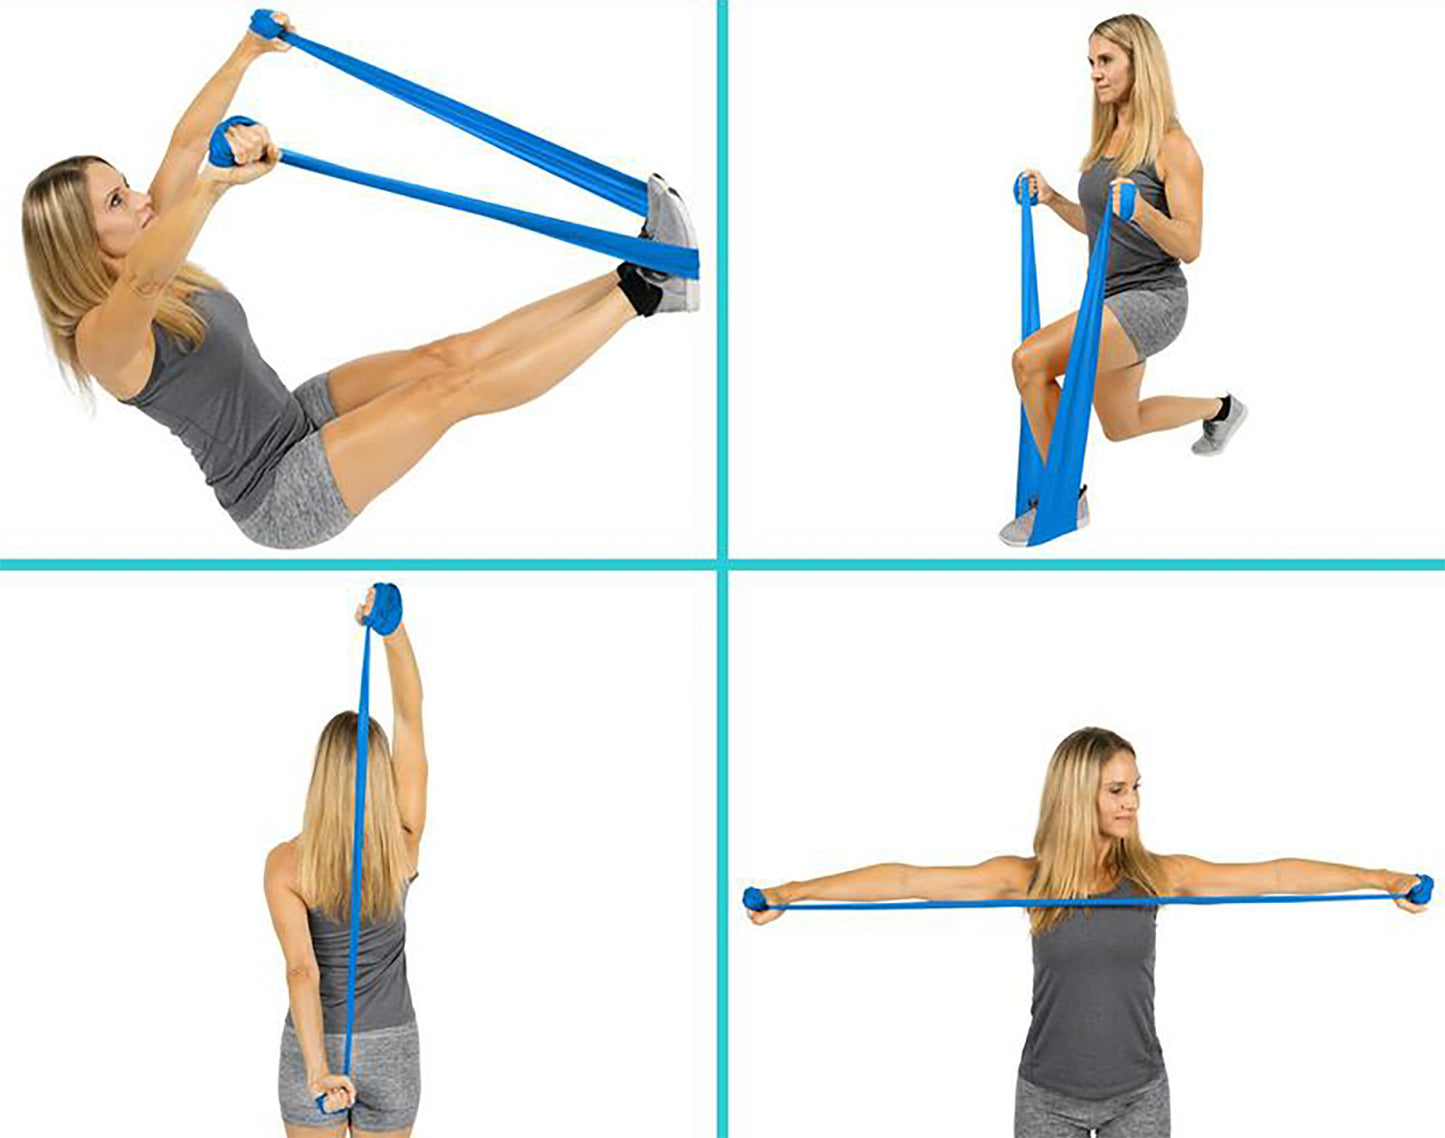 استك و حبل مفتوح لتدريبات اللياقة البدنية و الايروبيكس - ثيرا باند - مقاومه تحت المتوسطة - لون ازرق